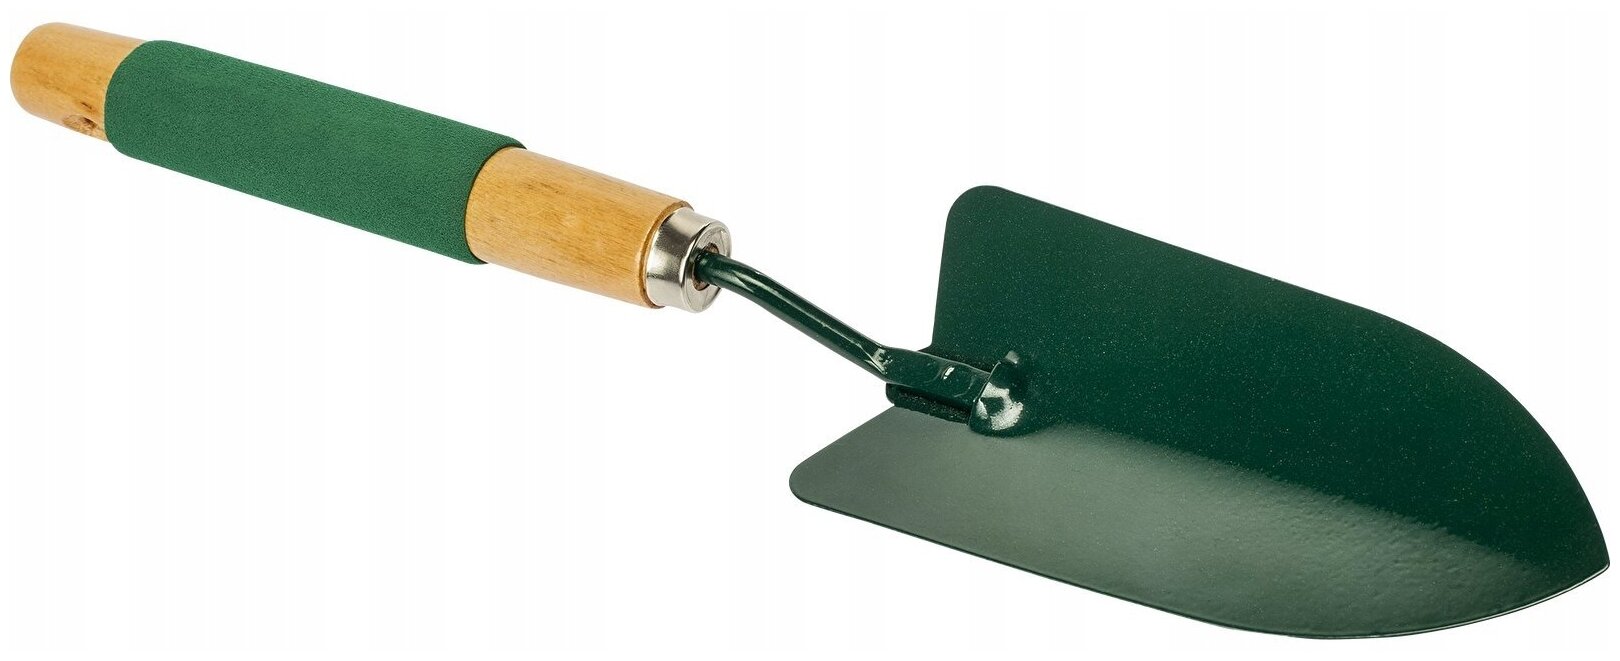 Лопатка металлическая садовая / инструмент для садоводства зеленая